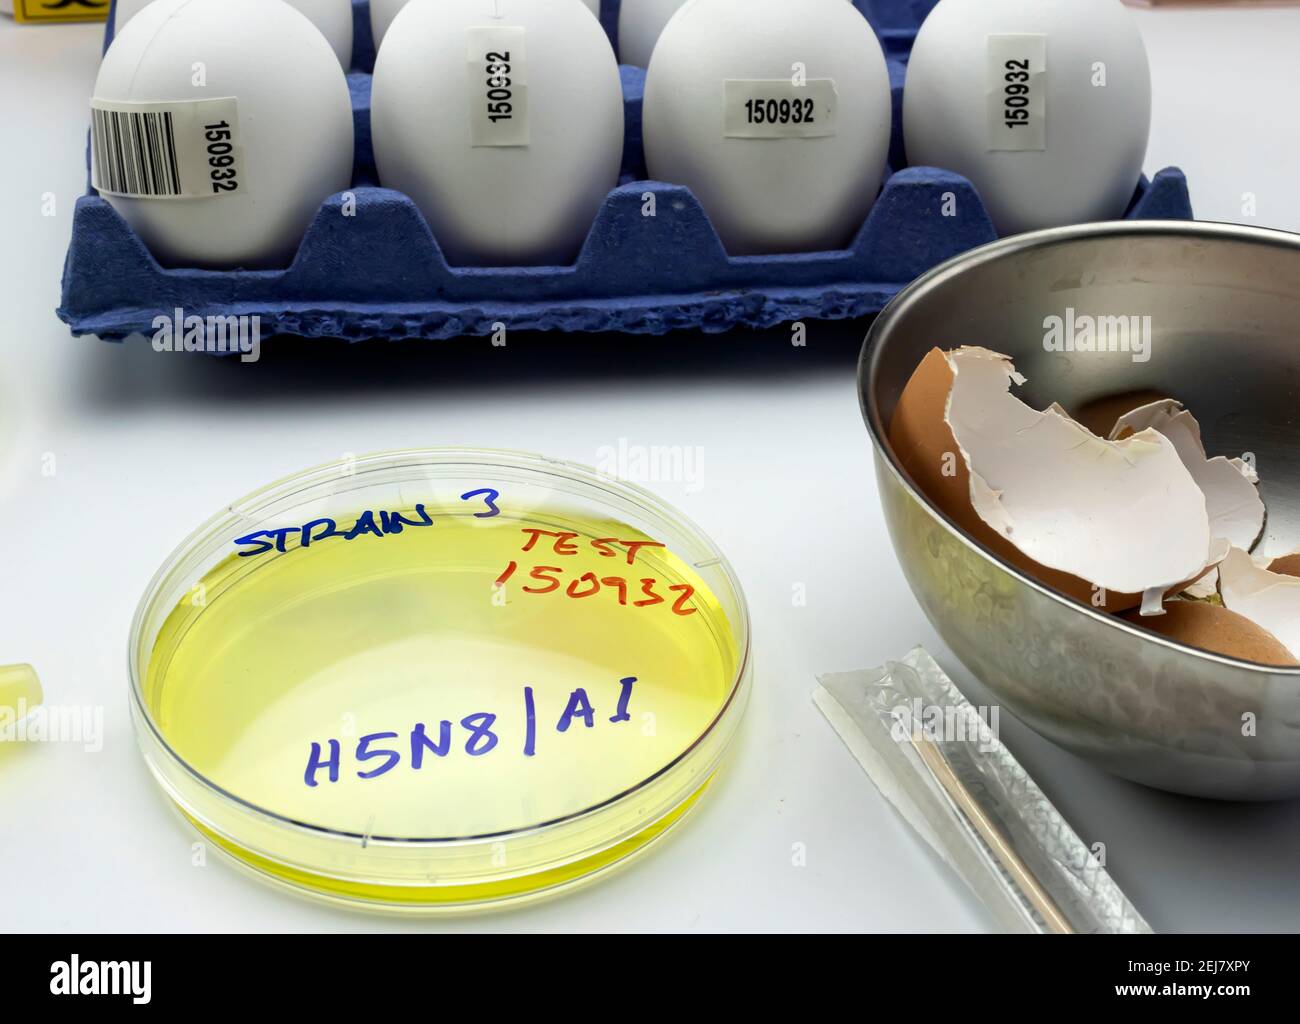 Neuer Stamm von H5N8 Vogelgrippe infiziert in Menschen, Petrischale mit Proben, konzeptuelles Bild Stockfoto